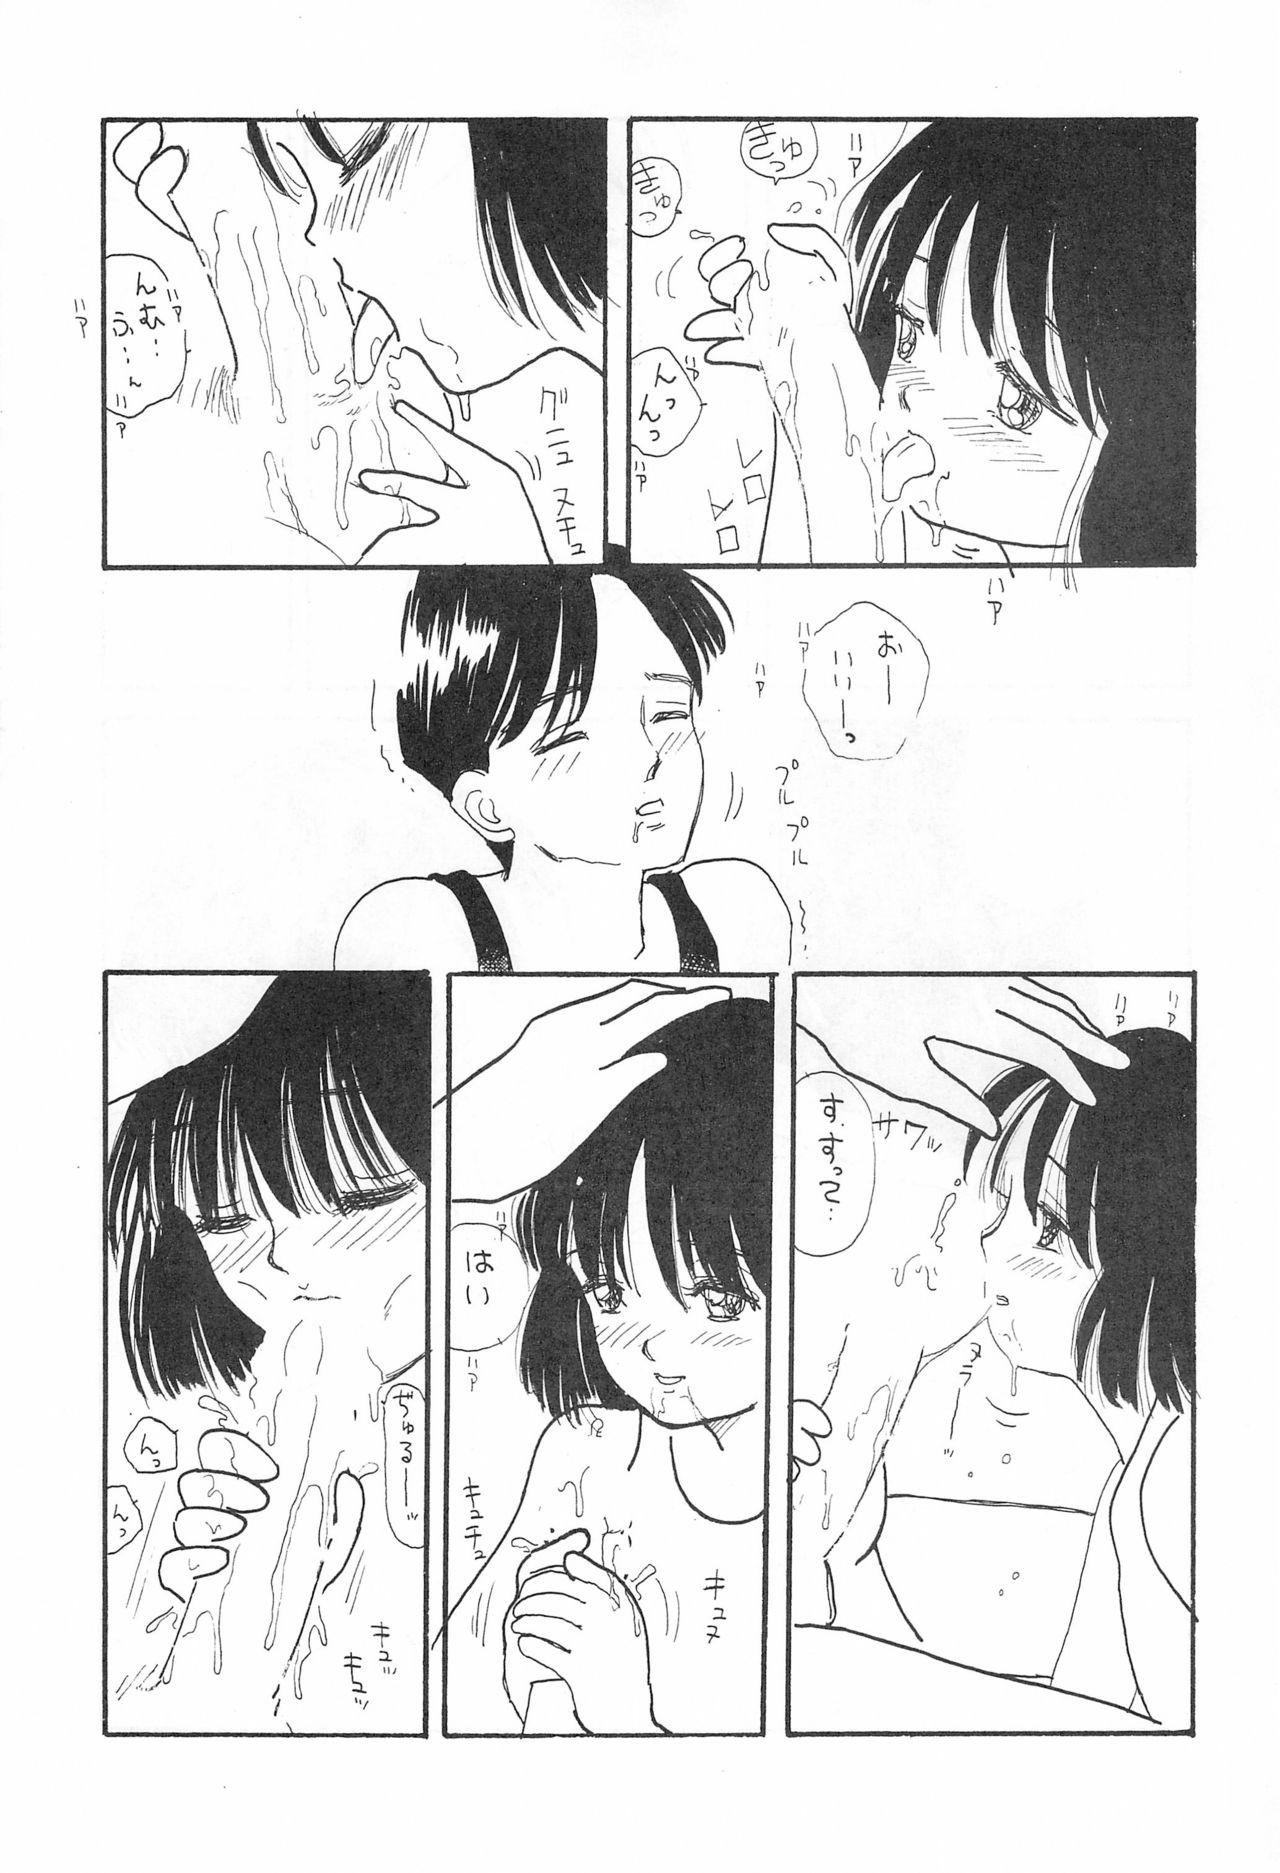 Masterbate SKY WALKER-8 NOZOMI - Original Public Sex - Page 13